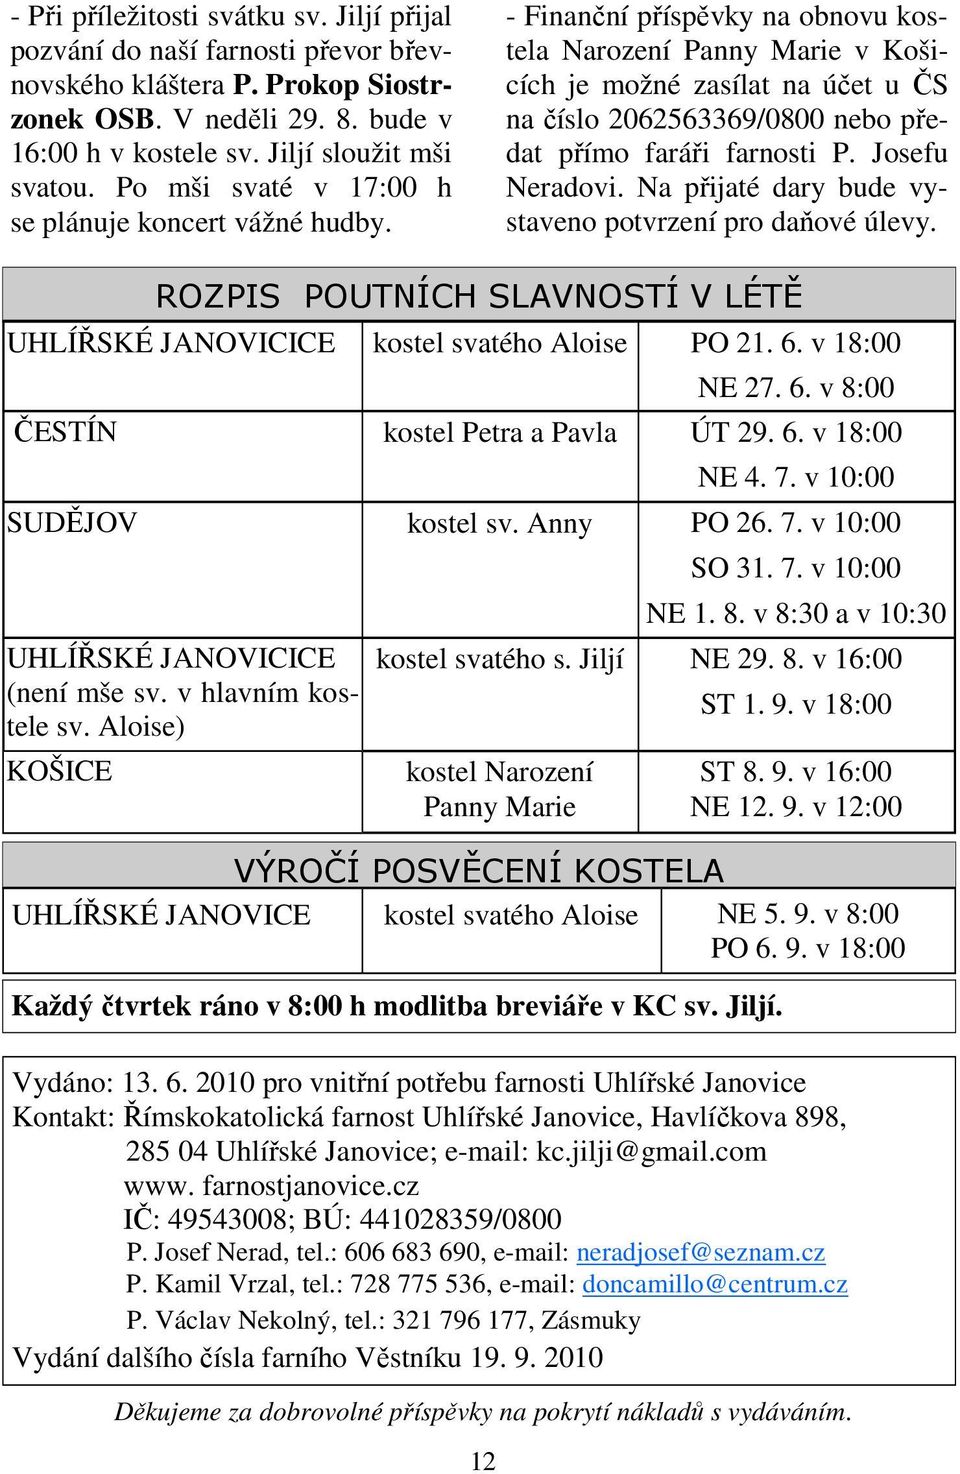 - Finanční příspěvky na obnovu kostela Narození Panny Marie v Košicích je možné zasílat na účet u ČS na číslo 2062563369/0800 nebo předat přímo faráři farnosti P. Josefu Neradovi.